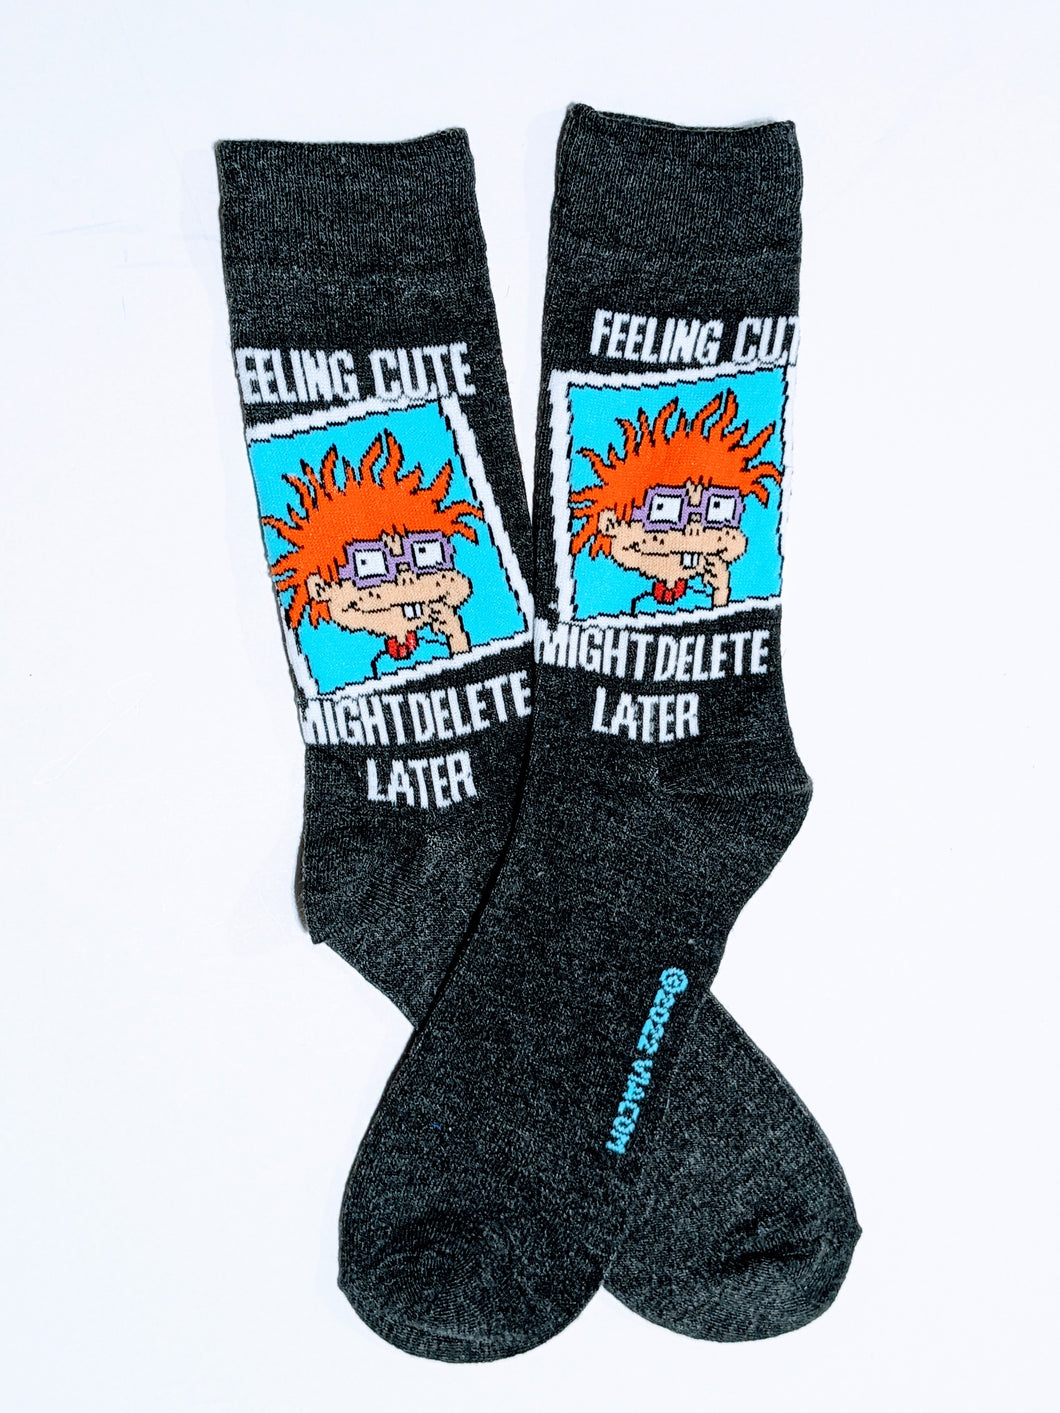 Chucky Selfie Felling Cute Rugrats Crew Socks